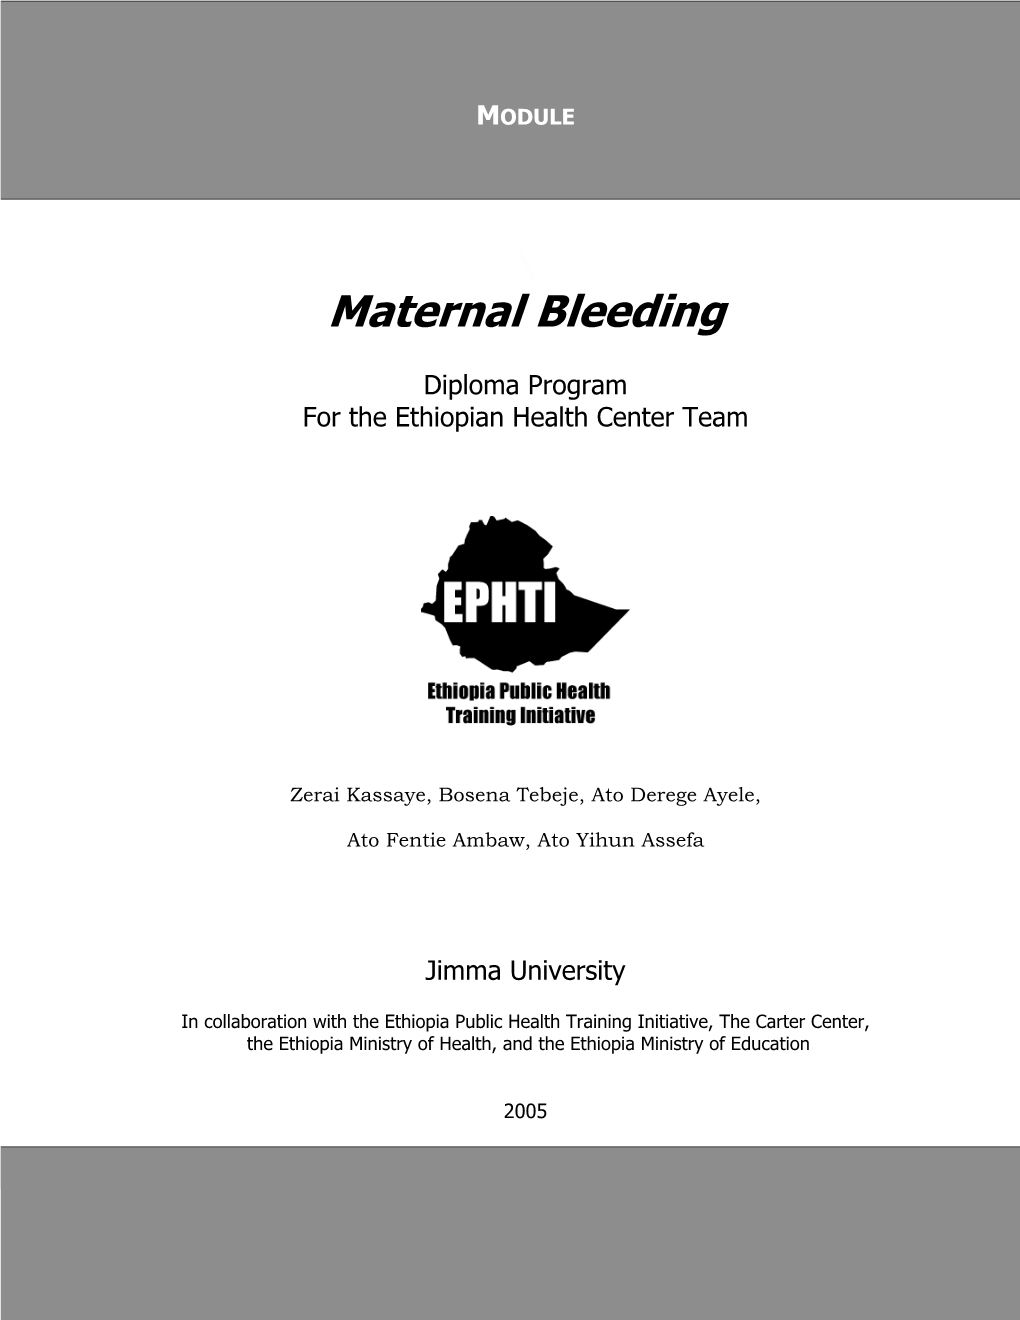 Maternal Bleeding